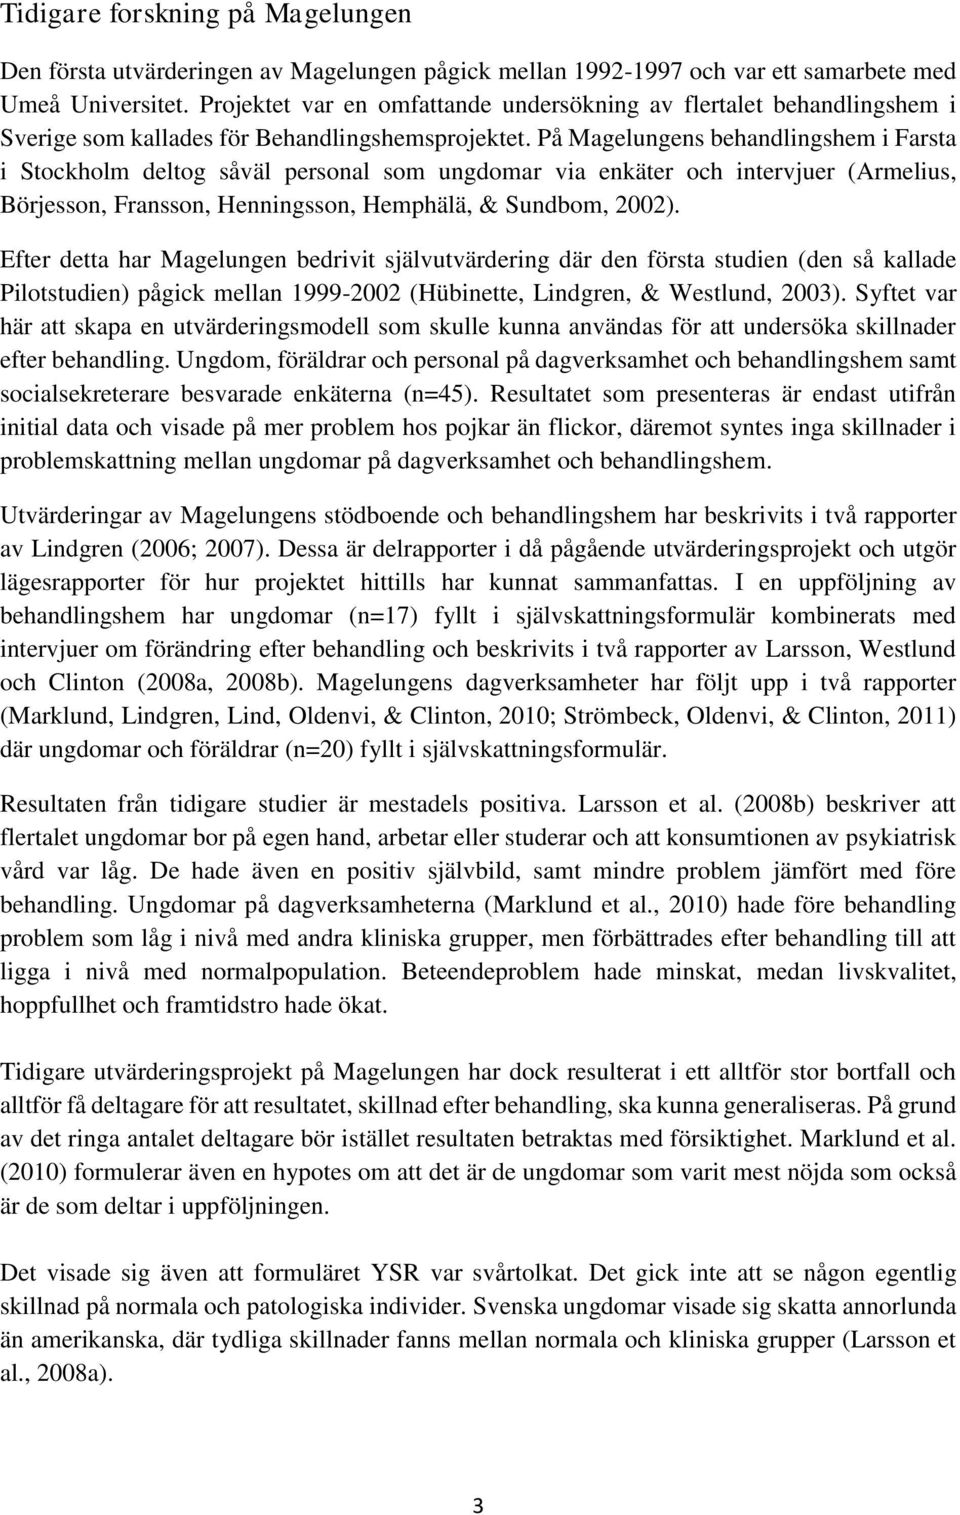 På Magelungens behandlingshem i Farsta i Stockholm deltog såväl personal som ungdomar via enkäter och intervjuer (Armelius, Börjesson, Fransson, Henningsson, Hemphälä, & Sundbom, 2002).